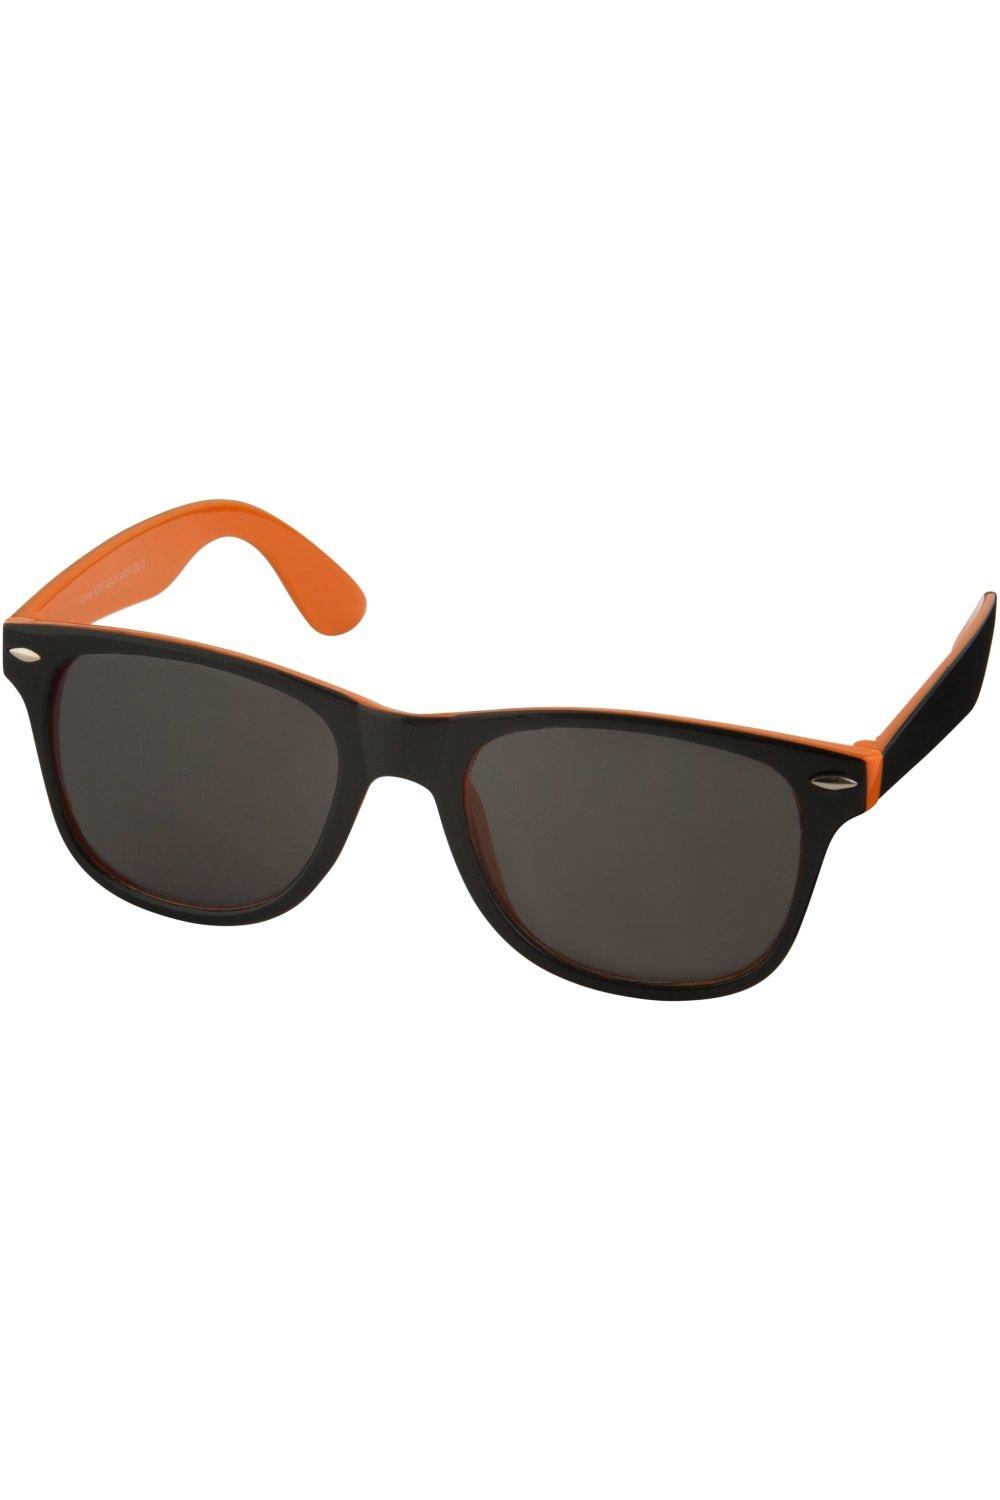 Солнцезащитные очки Sun Ray — черные с яркими акцентами (2 шт. в упаковке) Bullet, оранжевый цена и фото